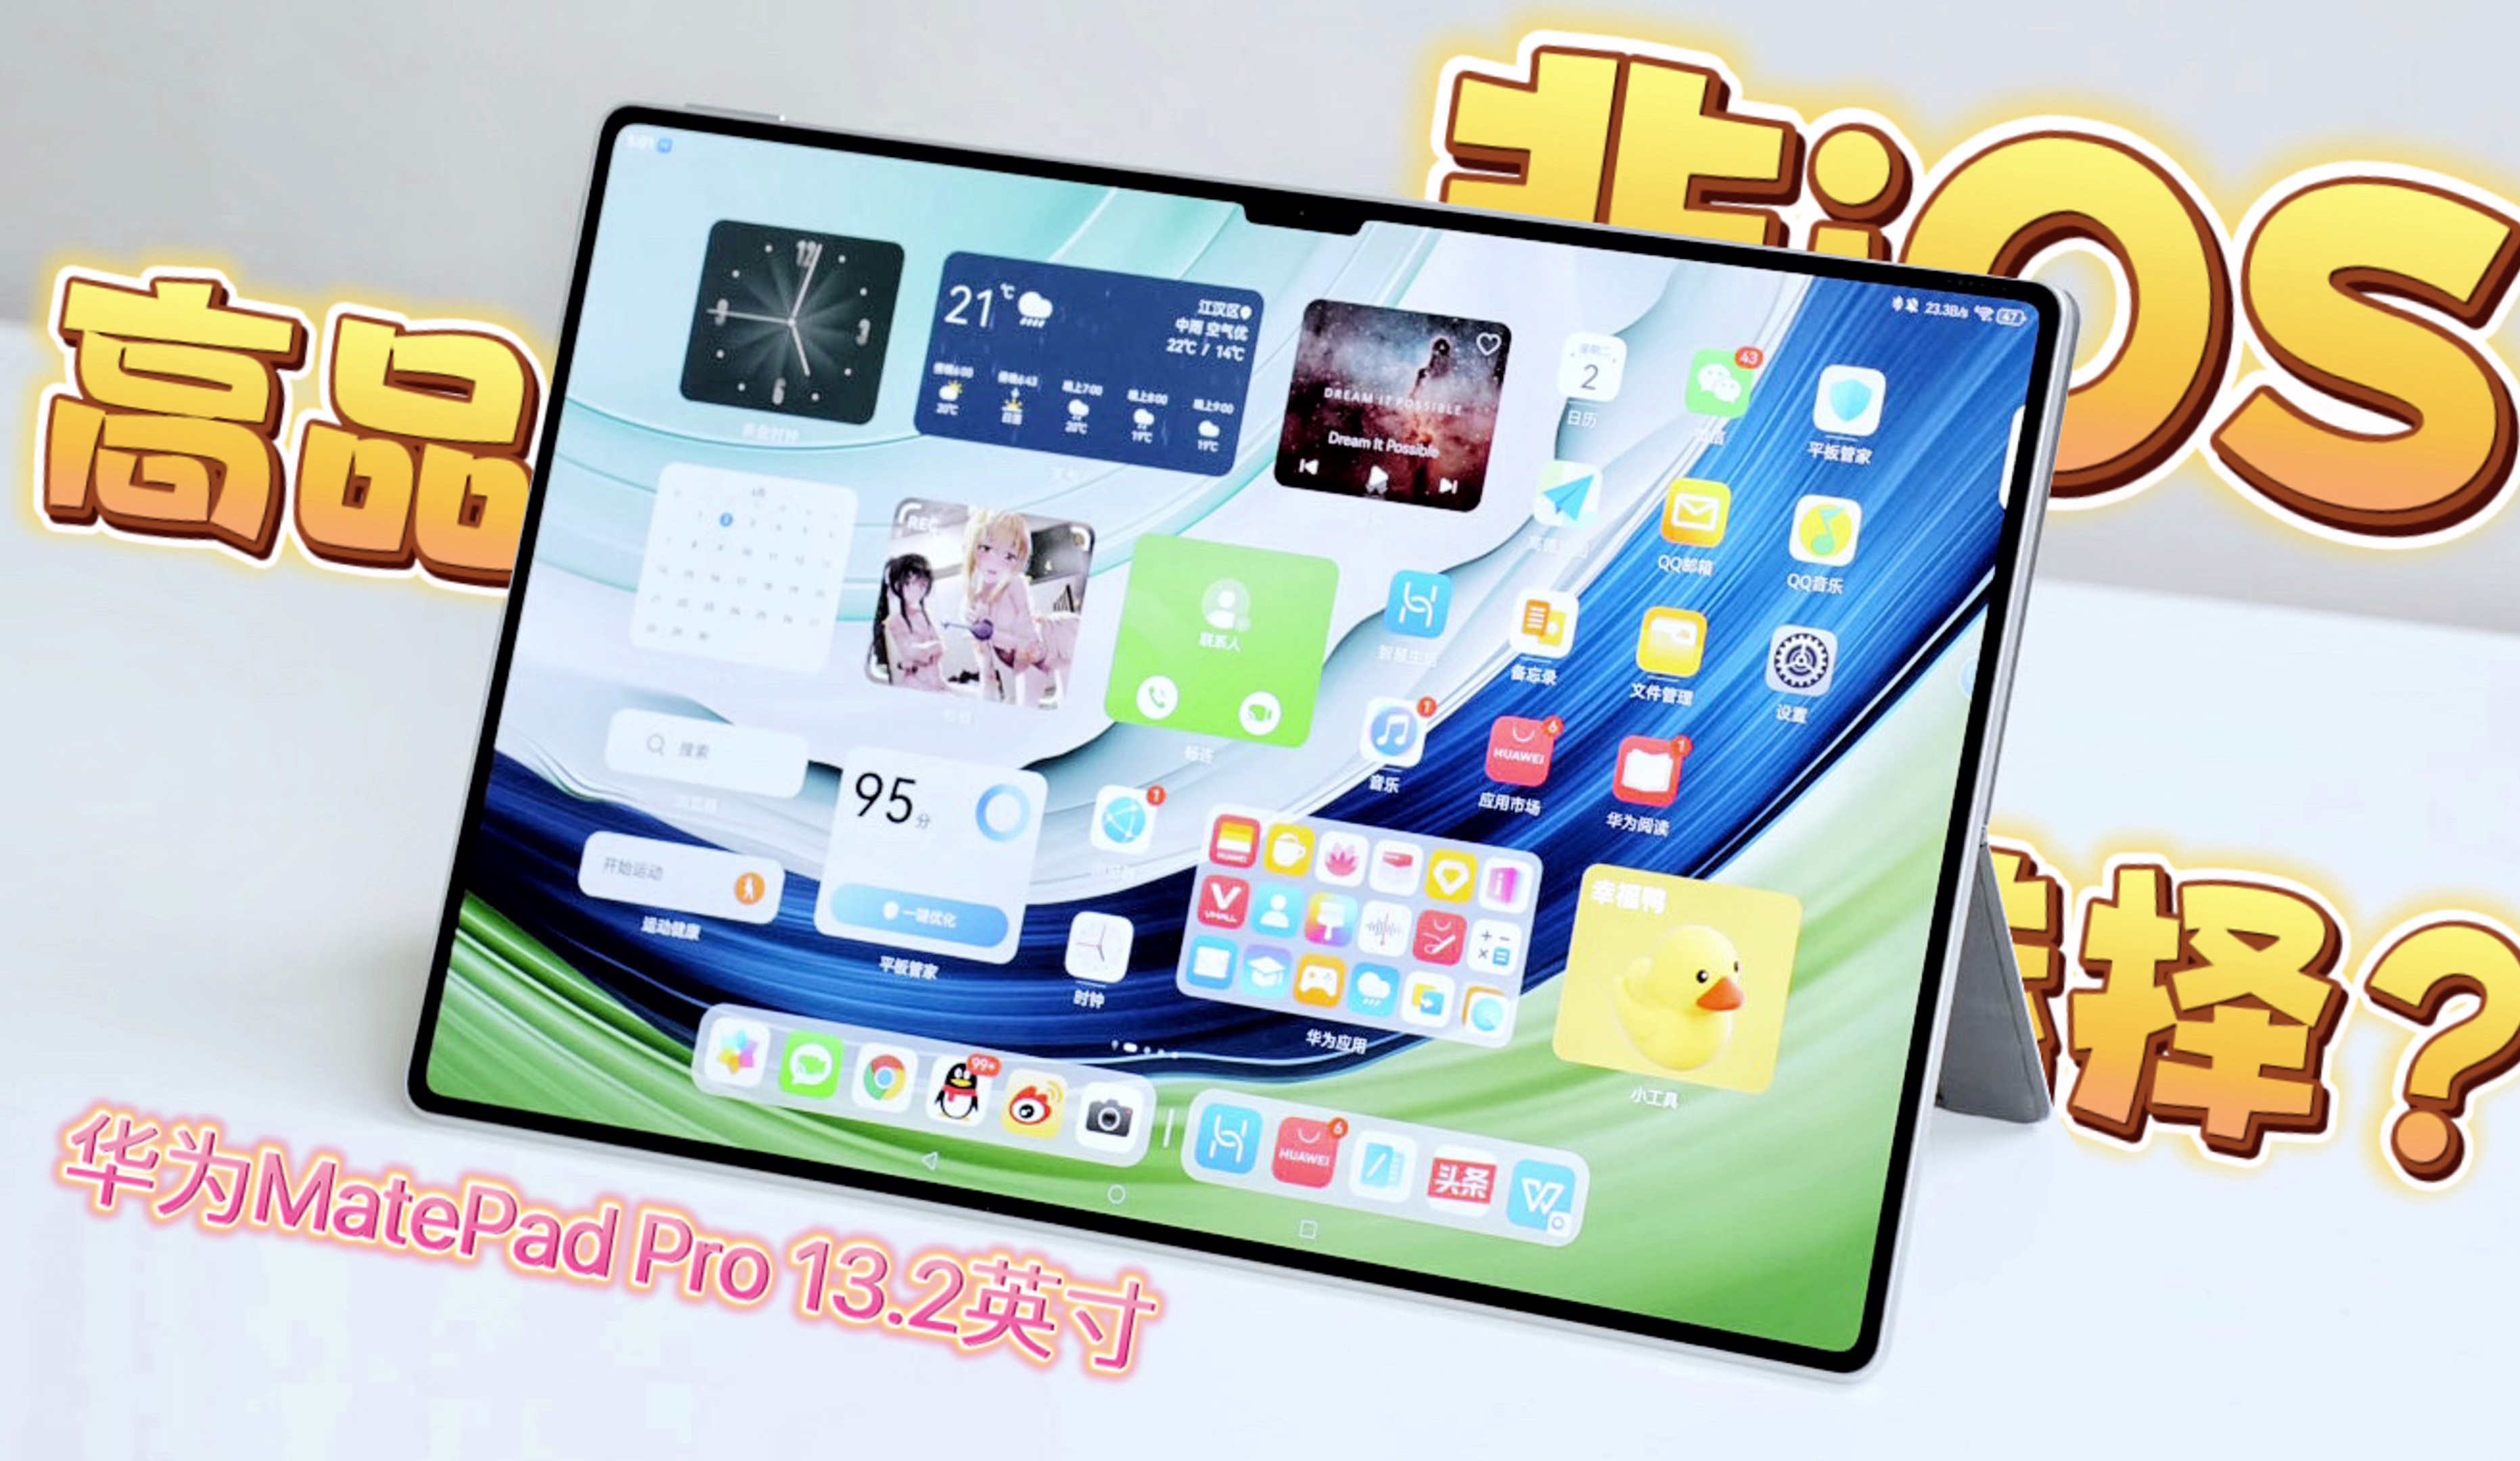 非iPad平板有什么优质可以选择？华为MatePad Pro 13.2英寸，OLED超窄边框大屏、超薄机身、PC级应用，多屏协同，目前最接近理想的国产平板！